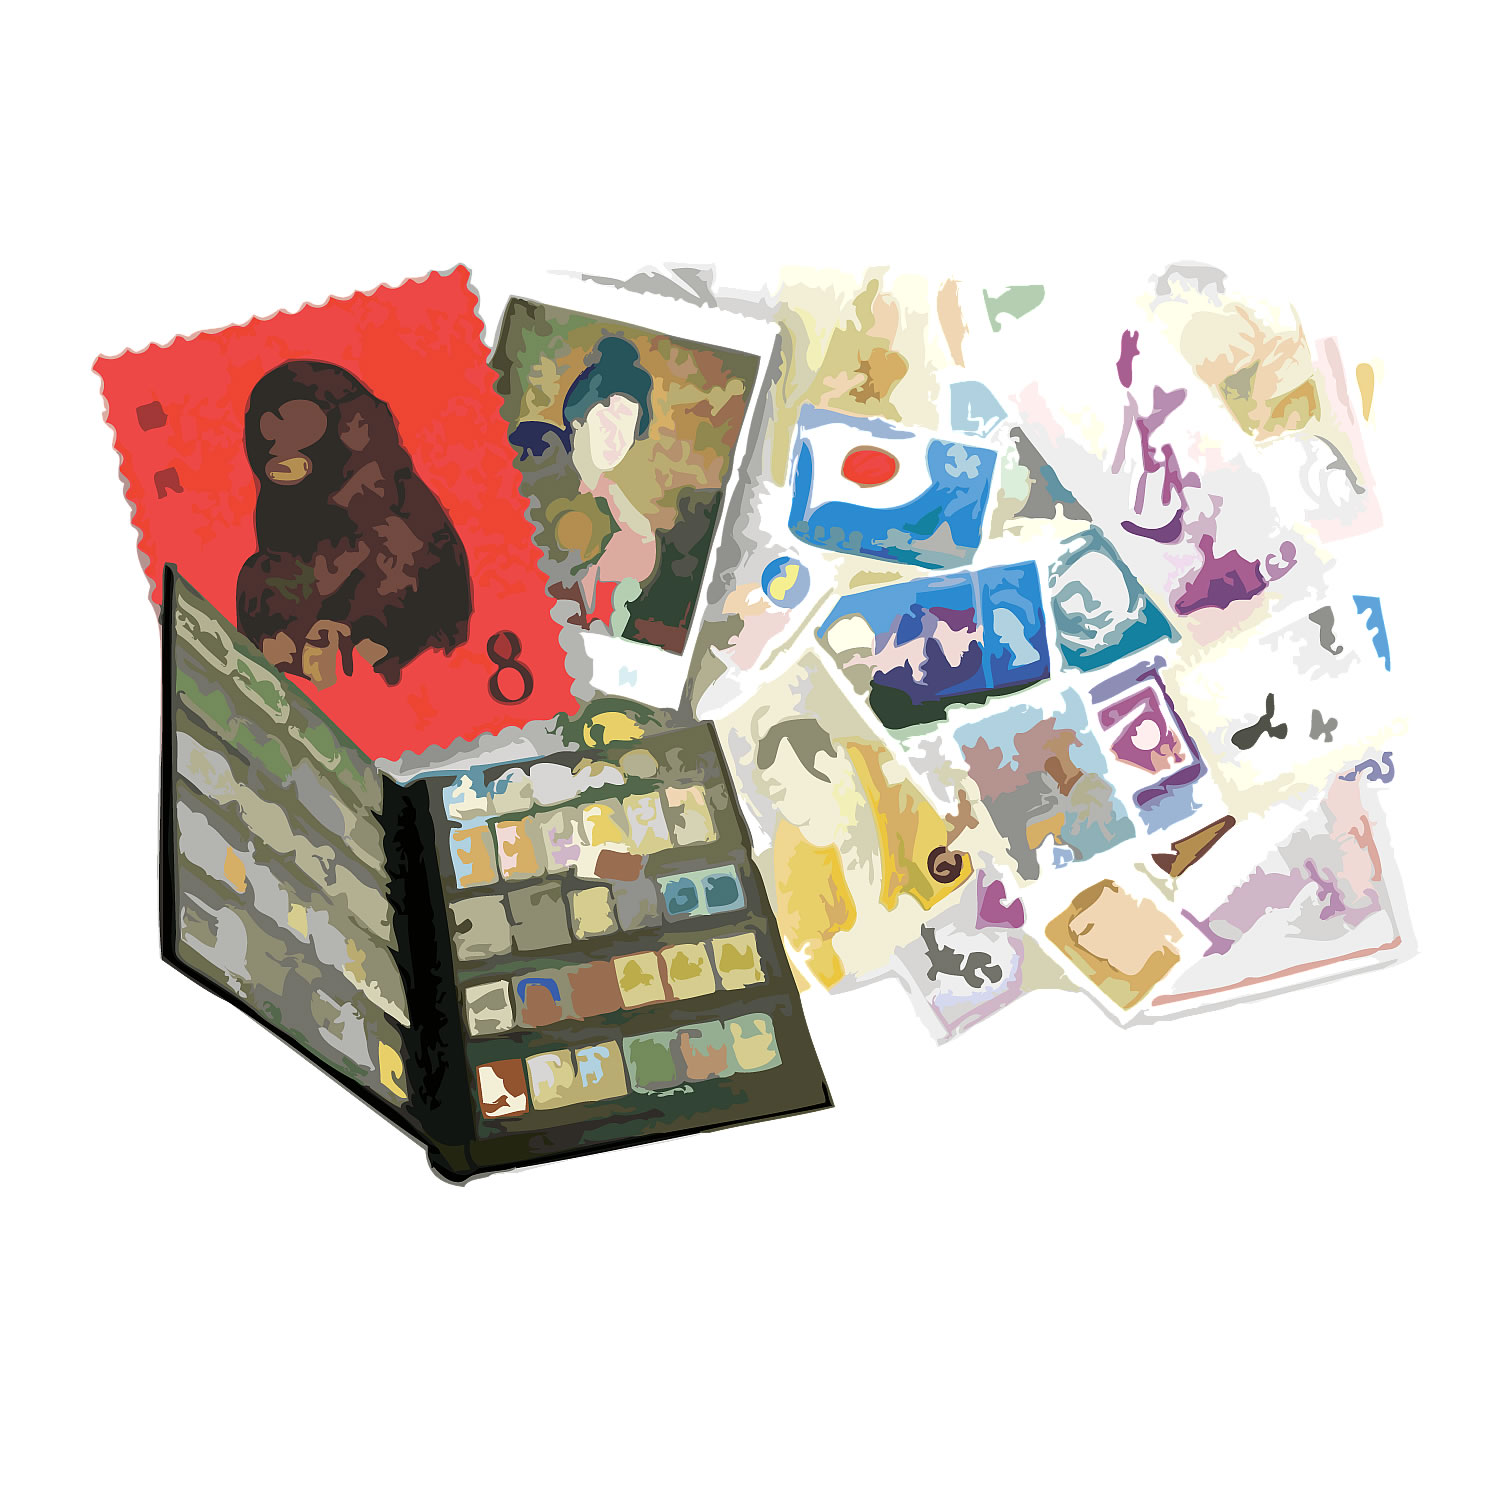 ばら切手とブックと中国切手一式 460,000円で買取り成立！